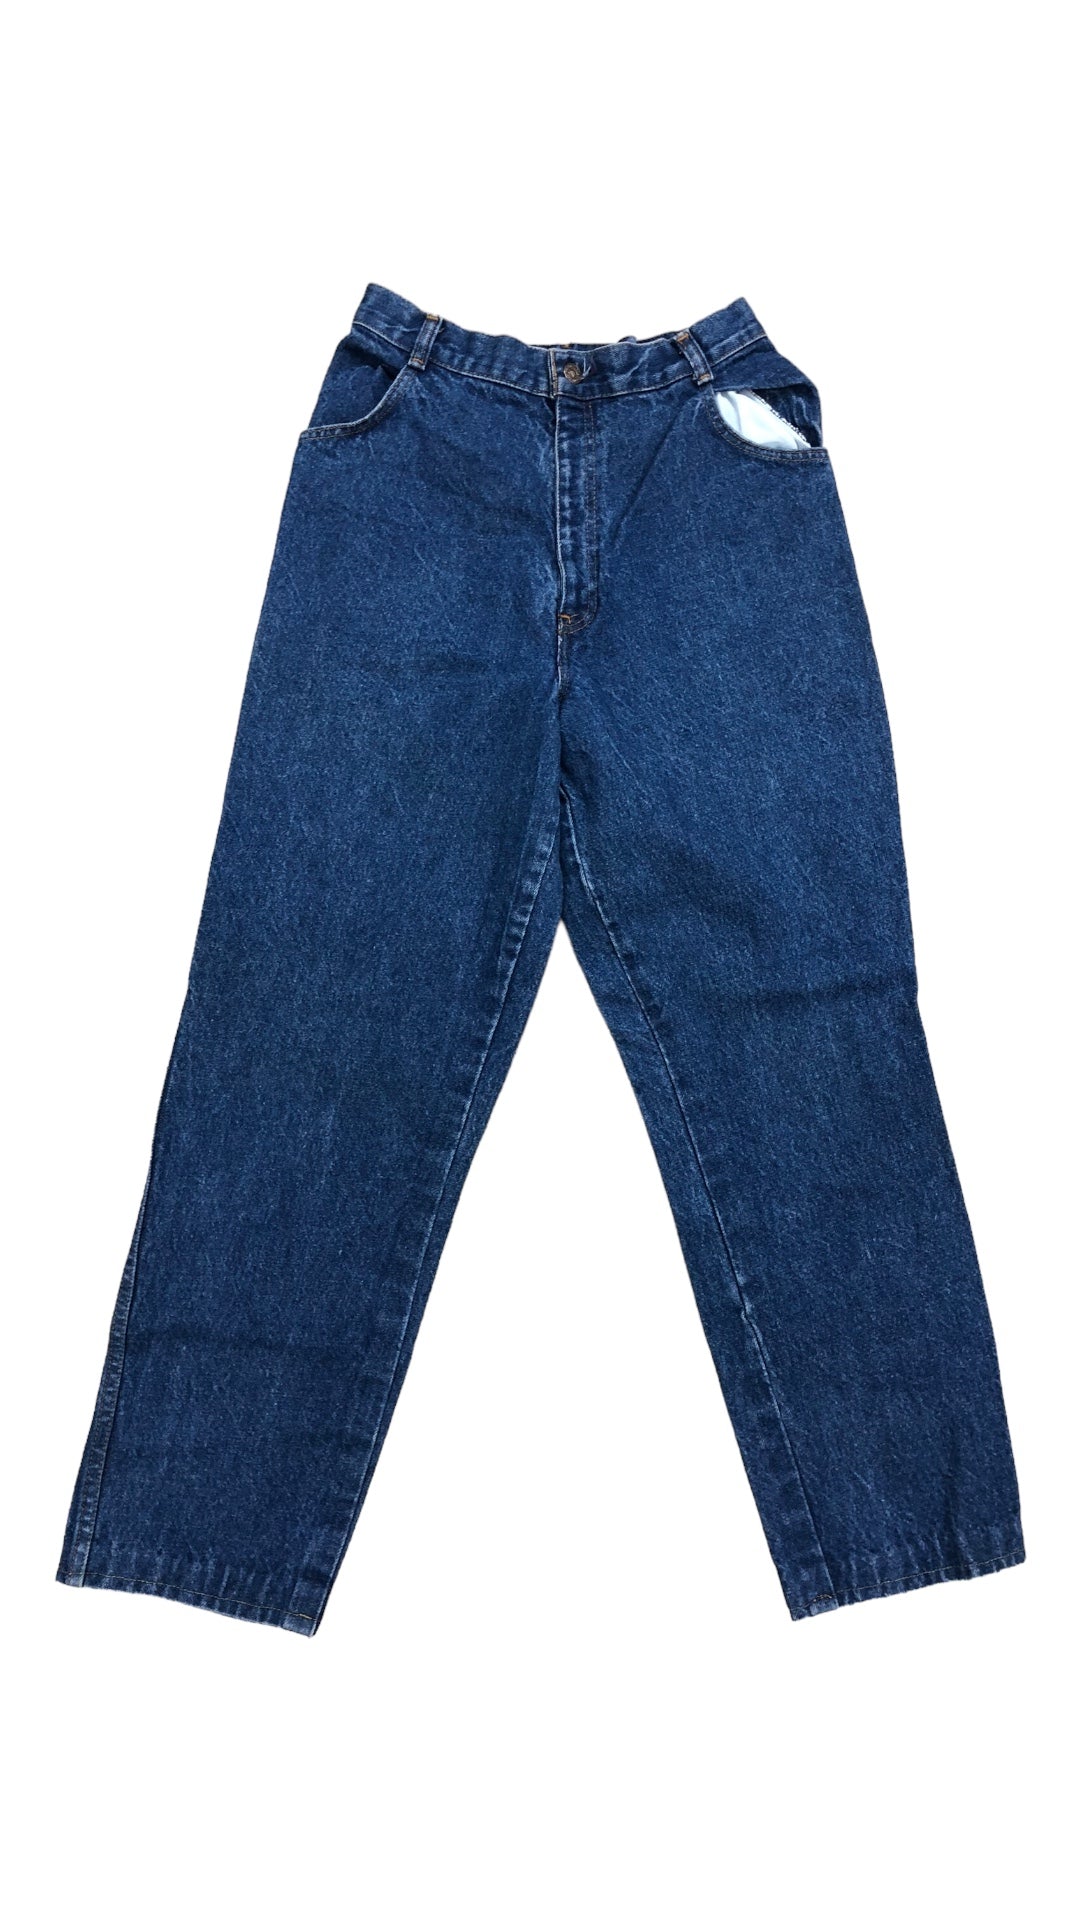 VTG Levi's Orange Tab Dark Wash Blue Denim Jeans Sz 28x29